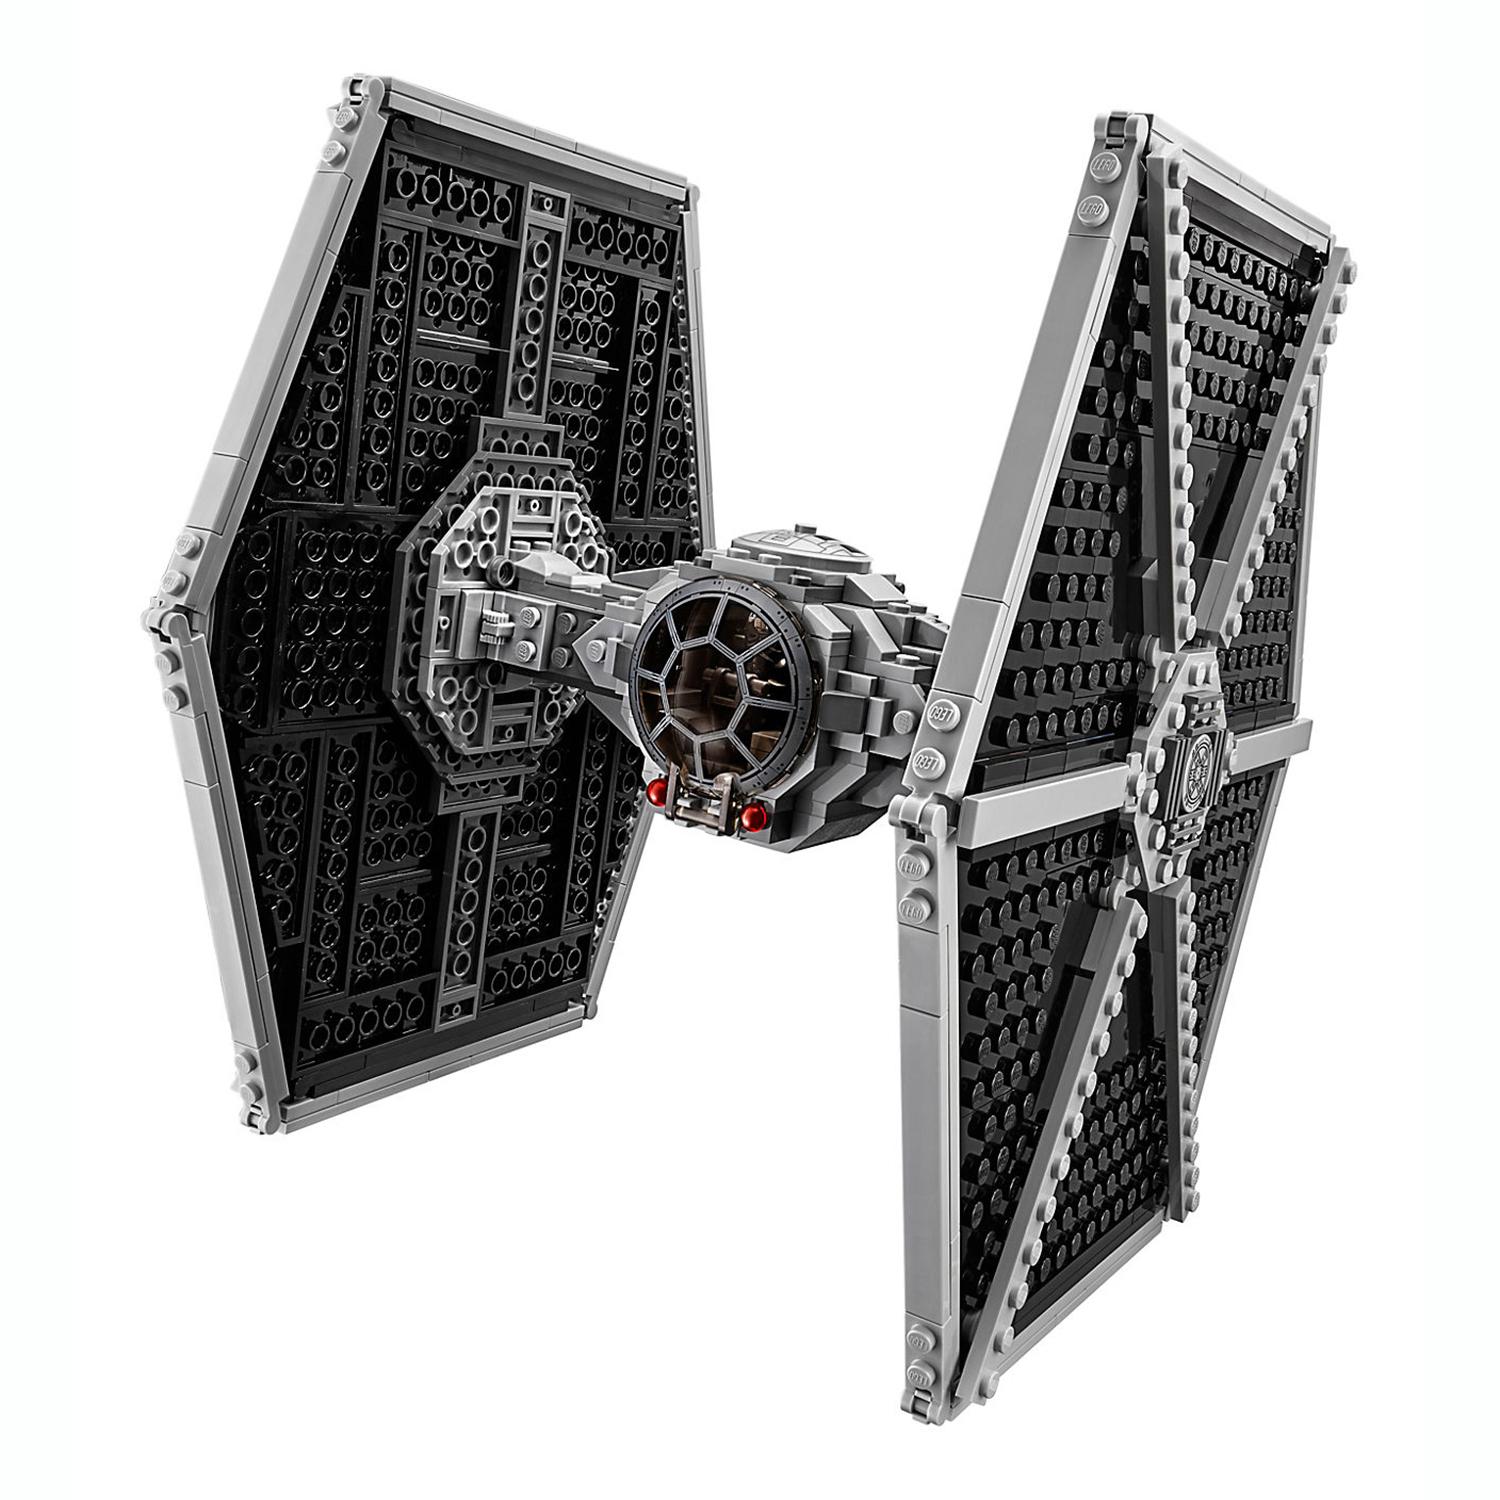 Lego Star Wars 75211 Имперский истребитель СИД